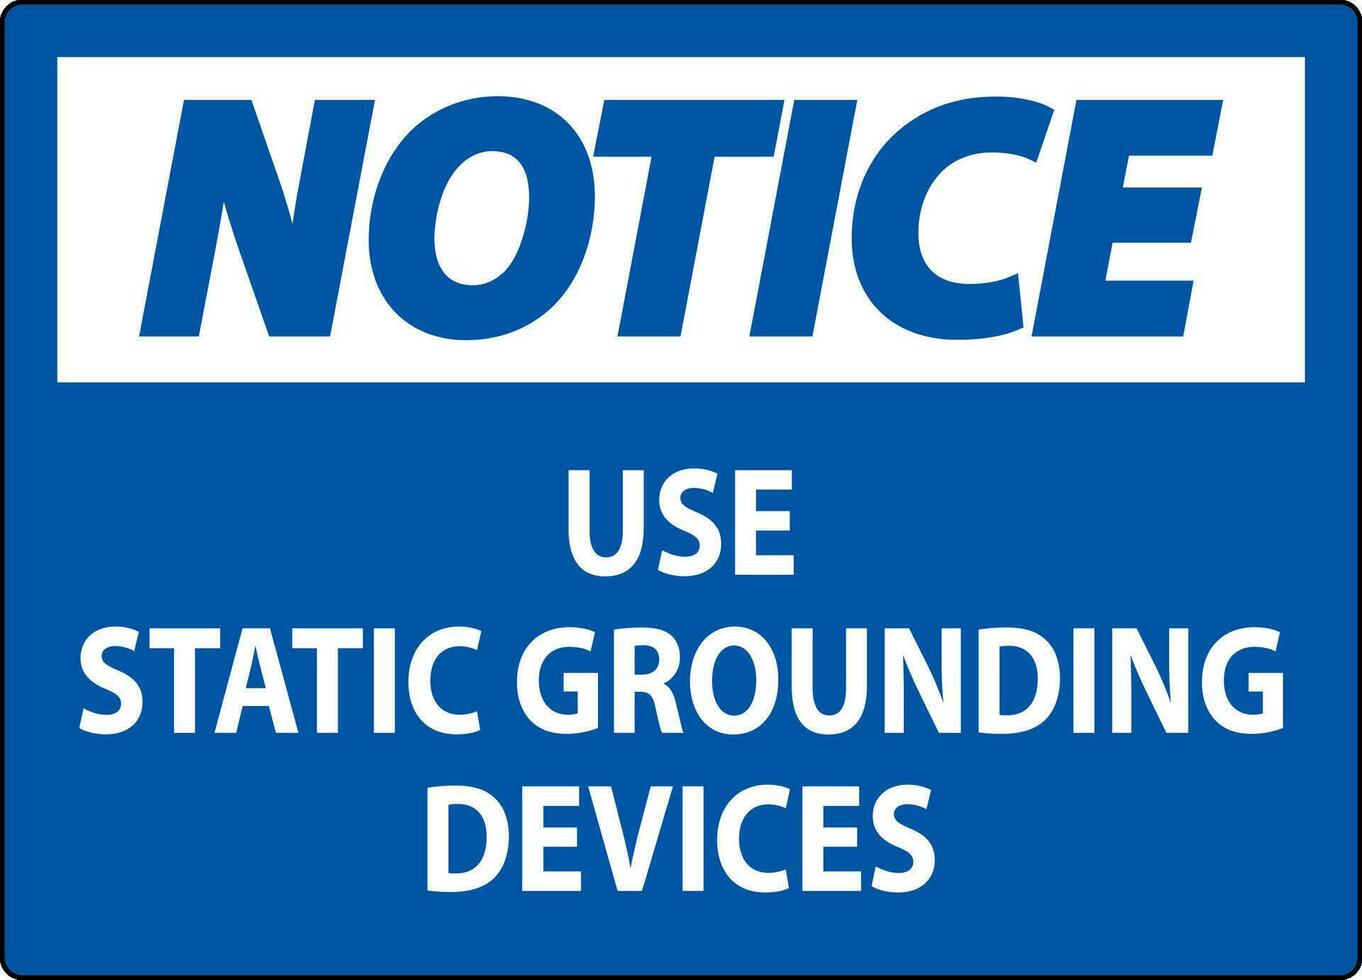 aviso prévio placa usar estático aterramento dispositivos vetor